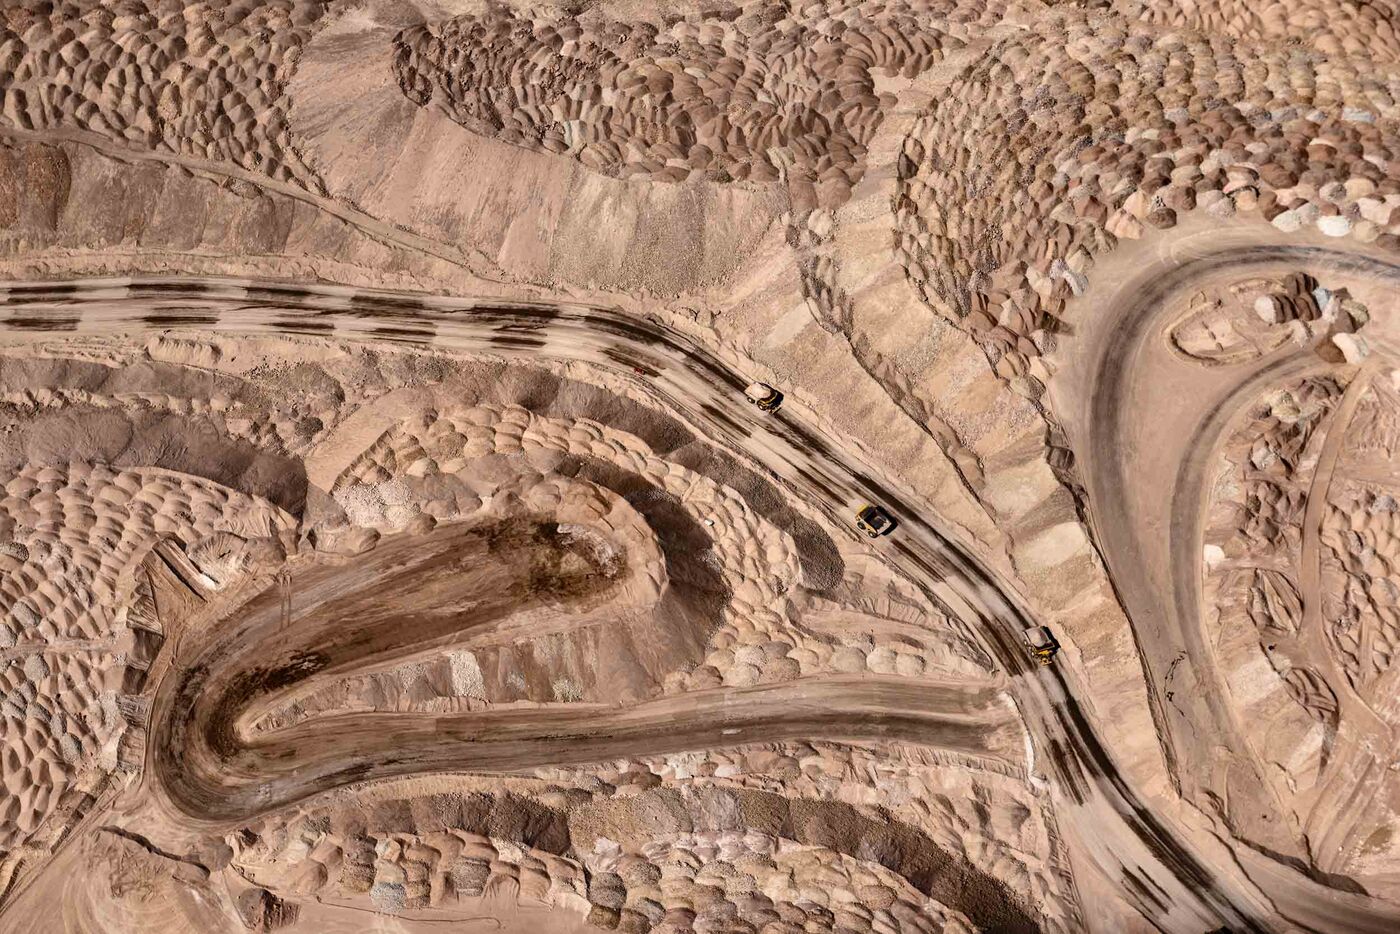 卡车从Codelco的Chuquimacata矿的底部运送矿石，这是世界上最大的露天矿。 这里有成堆的尾矿。